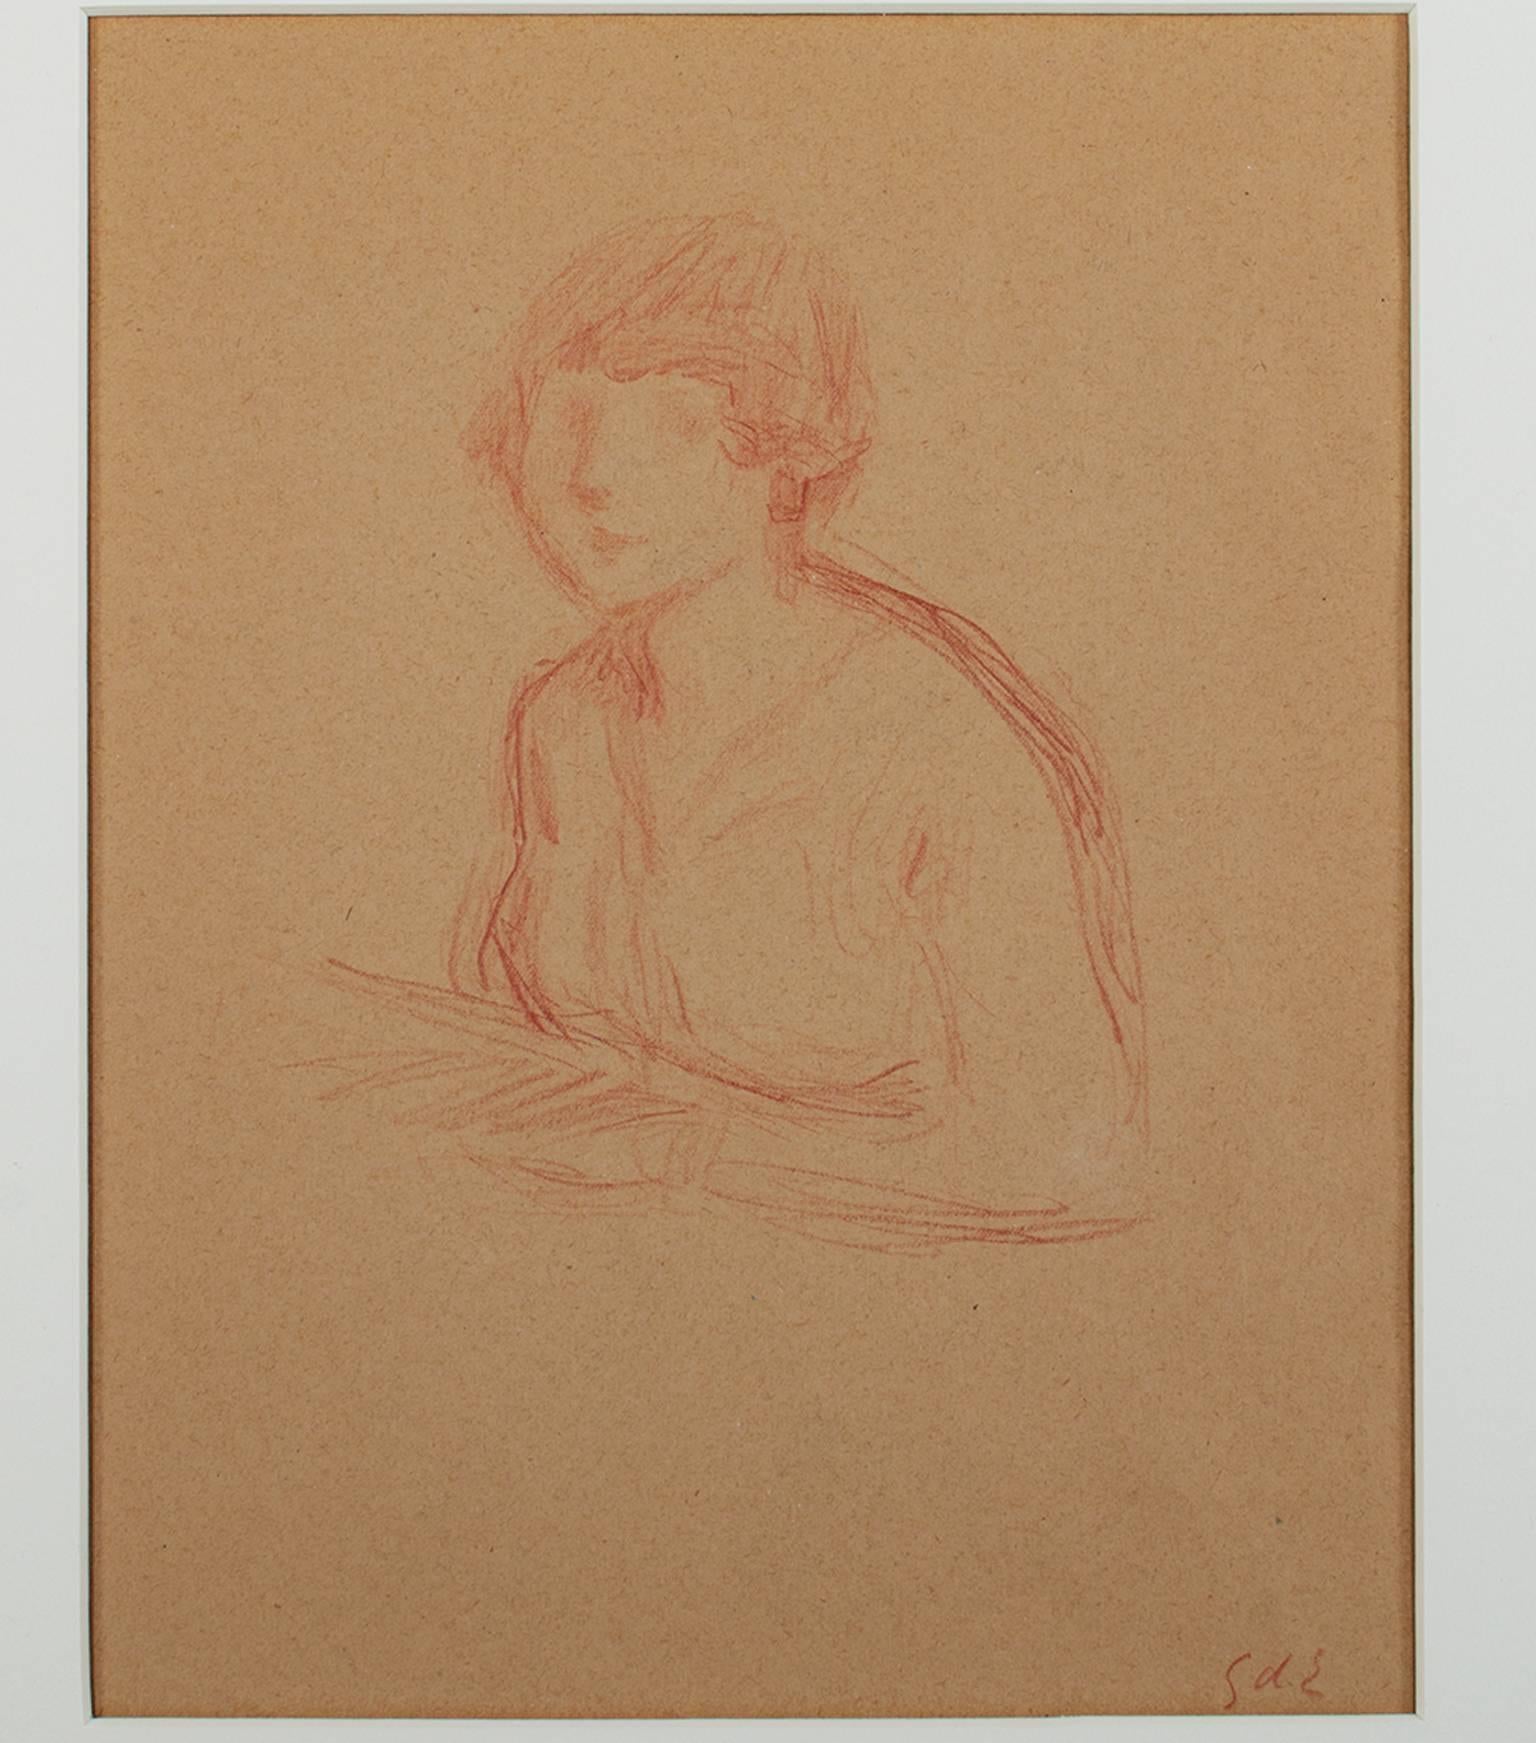 "Buste de Jeune Femme" est un dessin original au crayon de couleur de Georges d'Espagnat. Il est paraphé en bas à droite. Cette pièce représente une femme regardant le spectateur dans un brun rougeâtre clair. Le papier est également teinté en brun.